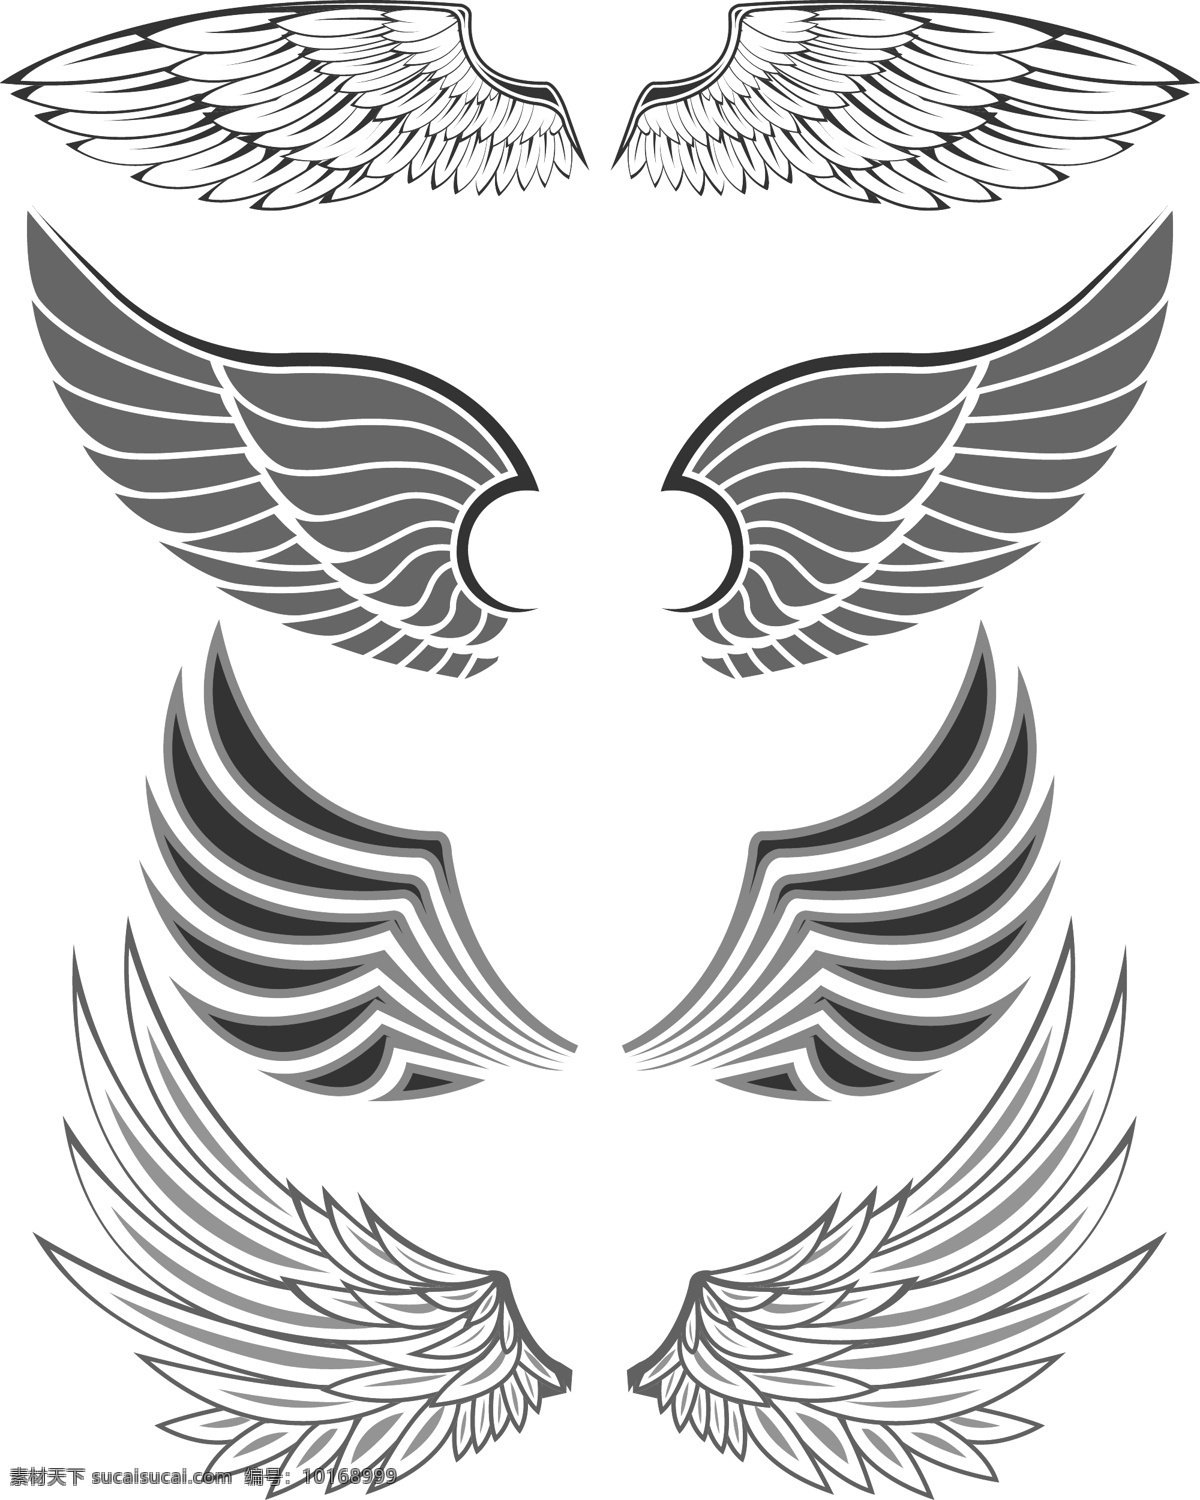 翅膀矢量素材 翅膀 羽毛 翼 图腾 鸟翅膀 鸟类翅膀 纹身 矢量素材 其他矢量 矢量